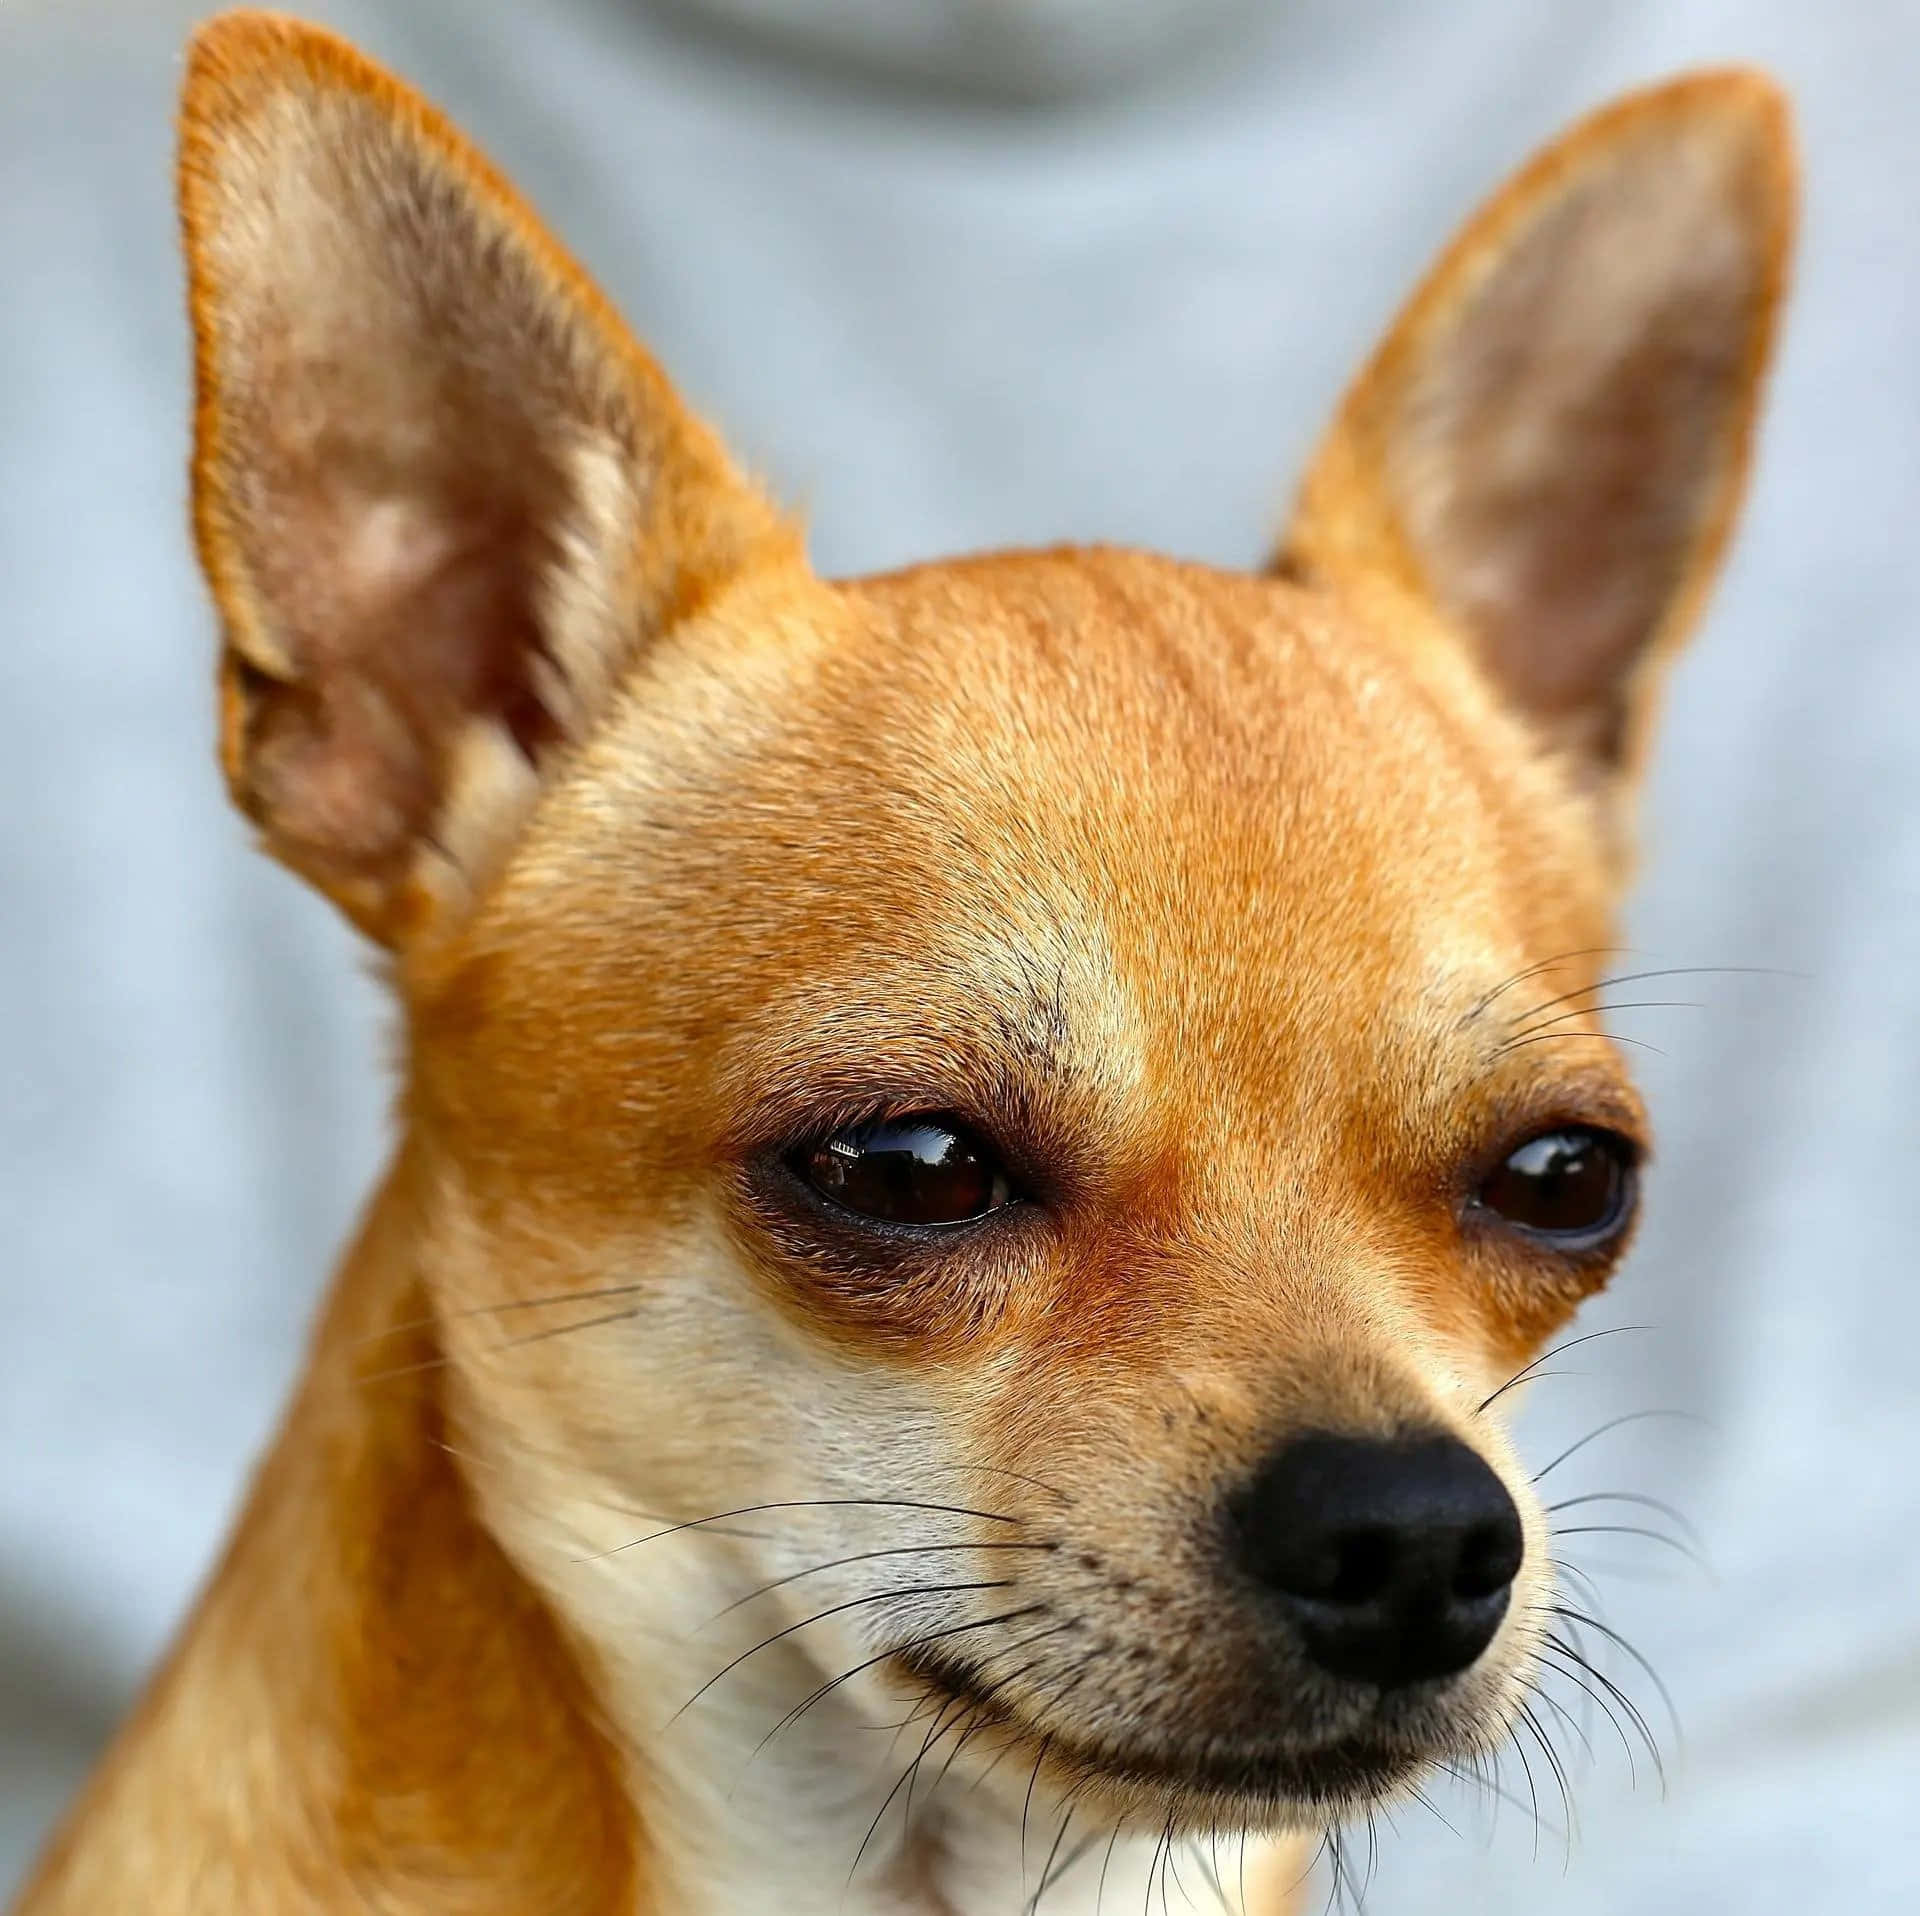 Brunbild På Chihuahua-hundras.